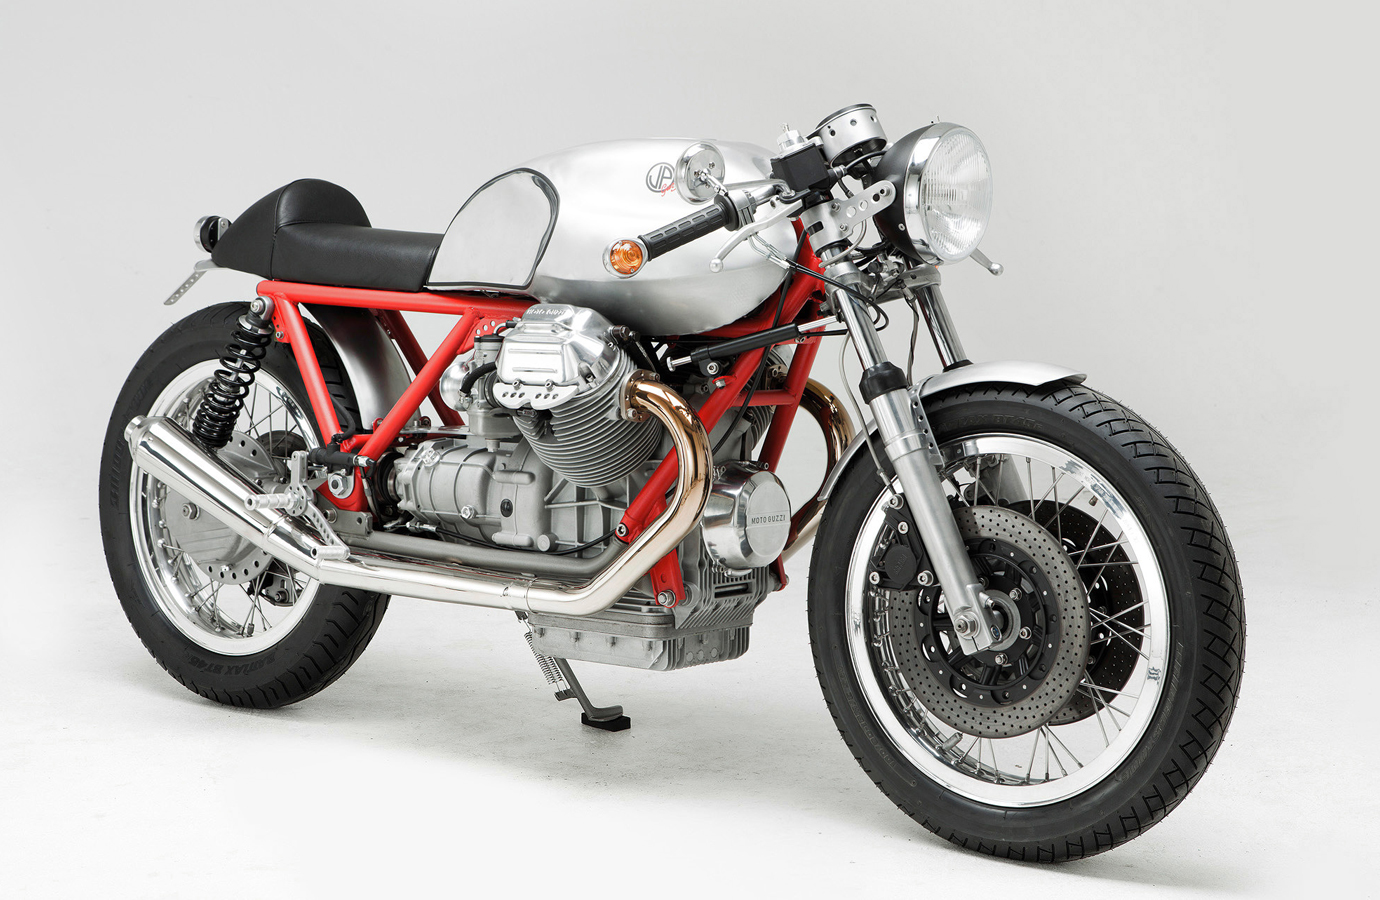 Moto Guzzi V7 Classic 750cc photo - 4